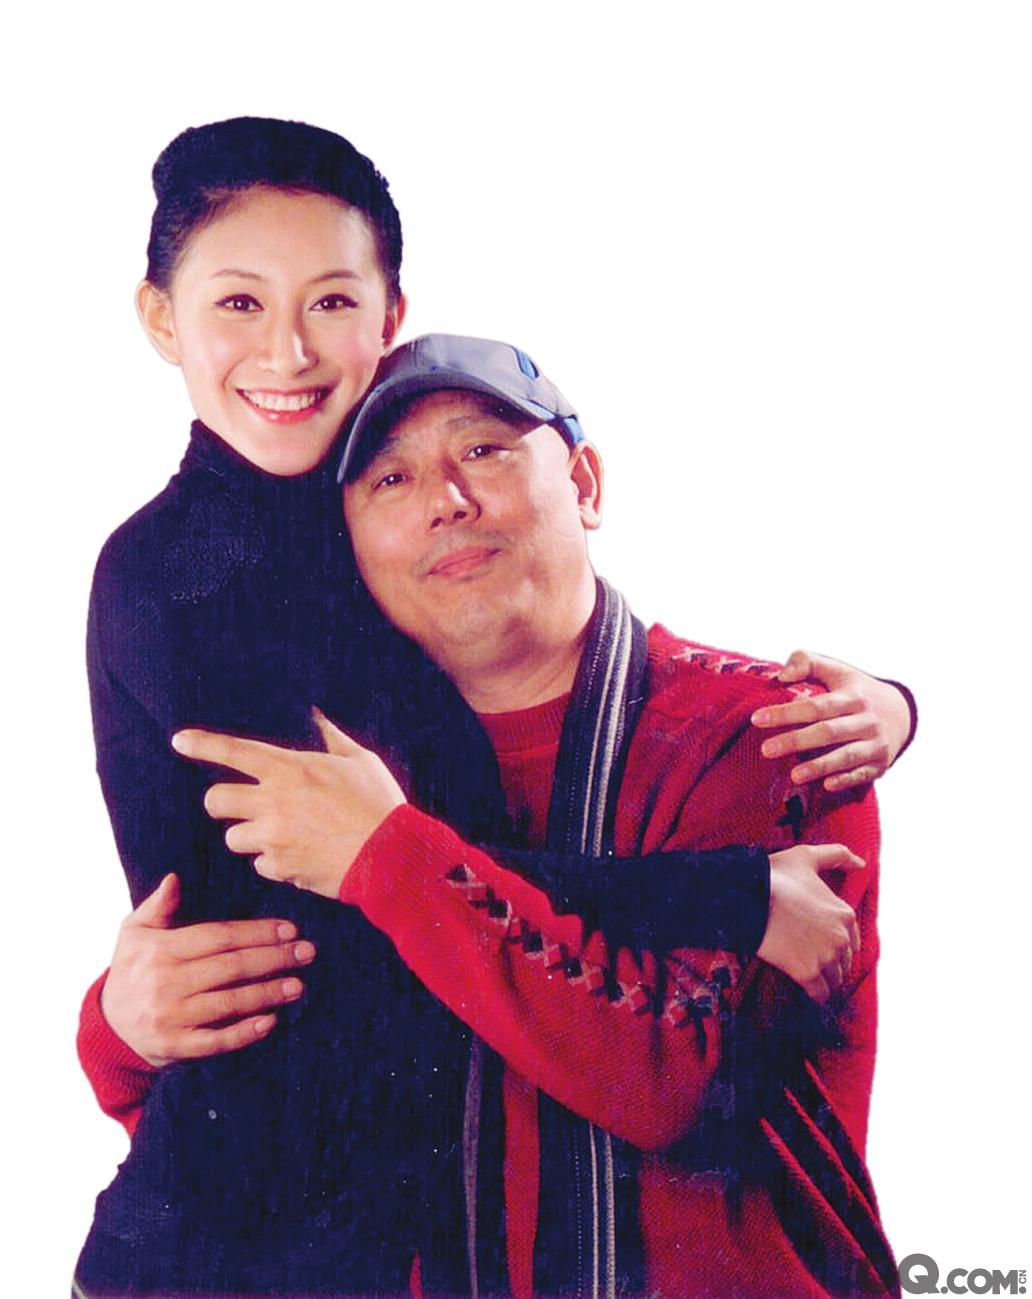 李成儒与侯角相识于2007年，两人同去参加在北京世贸天阶举行的一次媒体活动，乘坐电梯时偶然相逢。第一次见面就让李成儒对清纯貌美的侯角一见钟情，尽管两人年龄相差28岁，侯角与李成儒的儿子年纪相仿，但在李成儒的猛烈攻势下，两人很快陷入热恋，不过这段恋情仅在李和侯的核心朋友圈里小范围传播。侯角带着李成儒去见家人，未曾料到两人的婚事遭到侯家父母反对，父母不能接受一个和自己年龄相仿的男人和女儿结婚。两人之后不久分手，圈内一度流出“侯角欲退出娱乐圈，接手家族生意”的传闻。